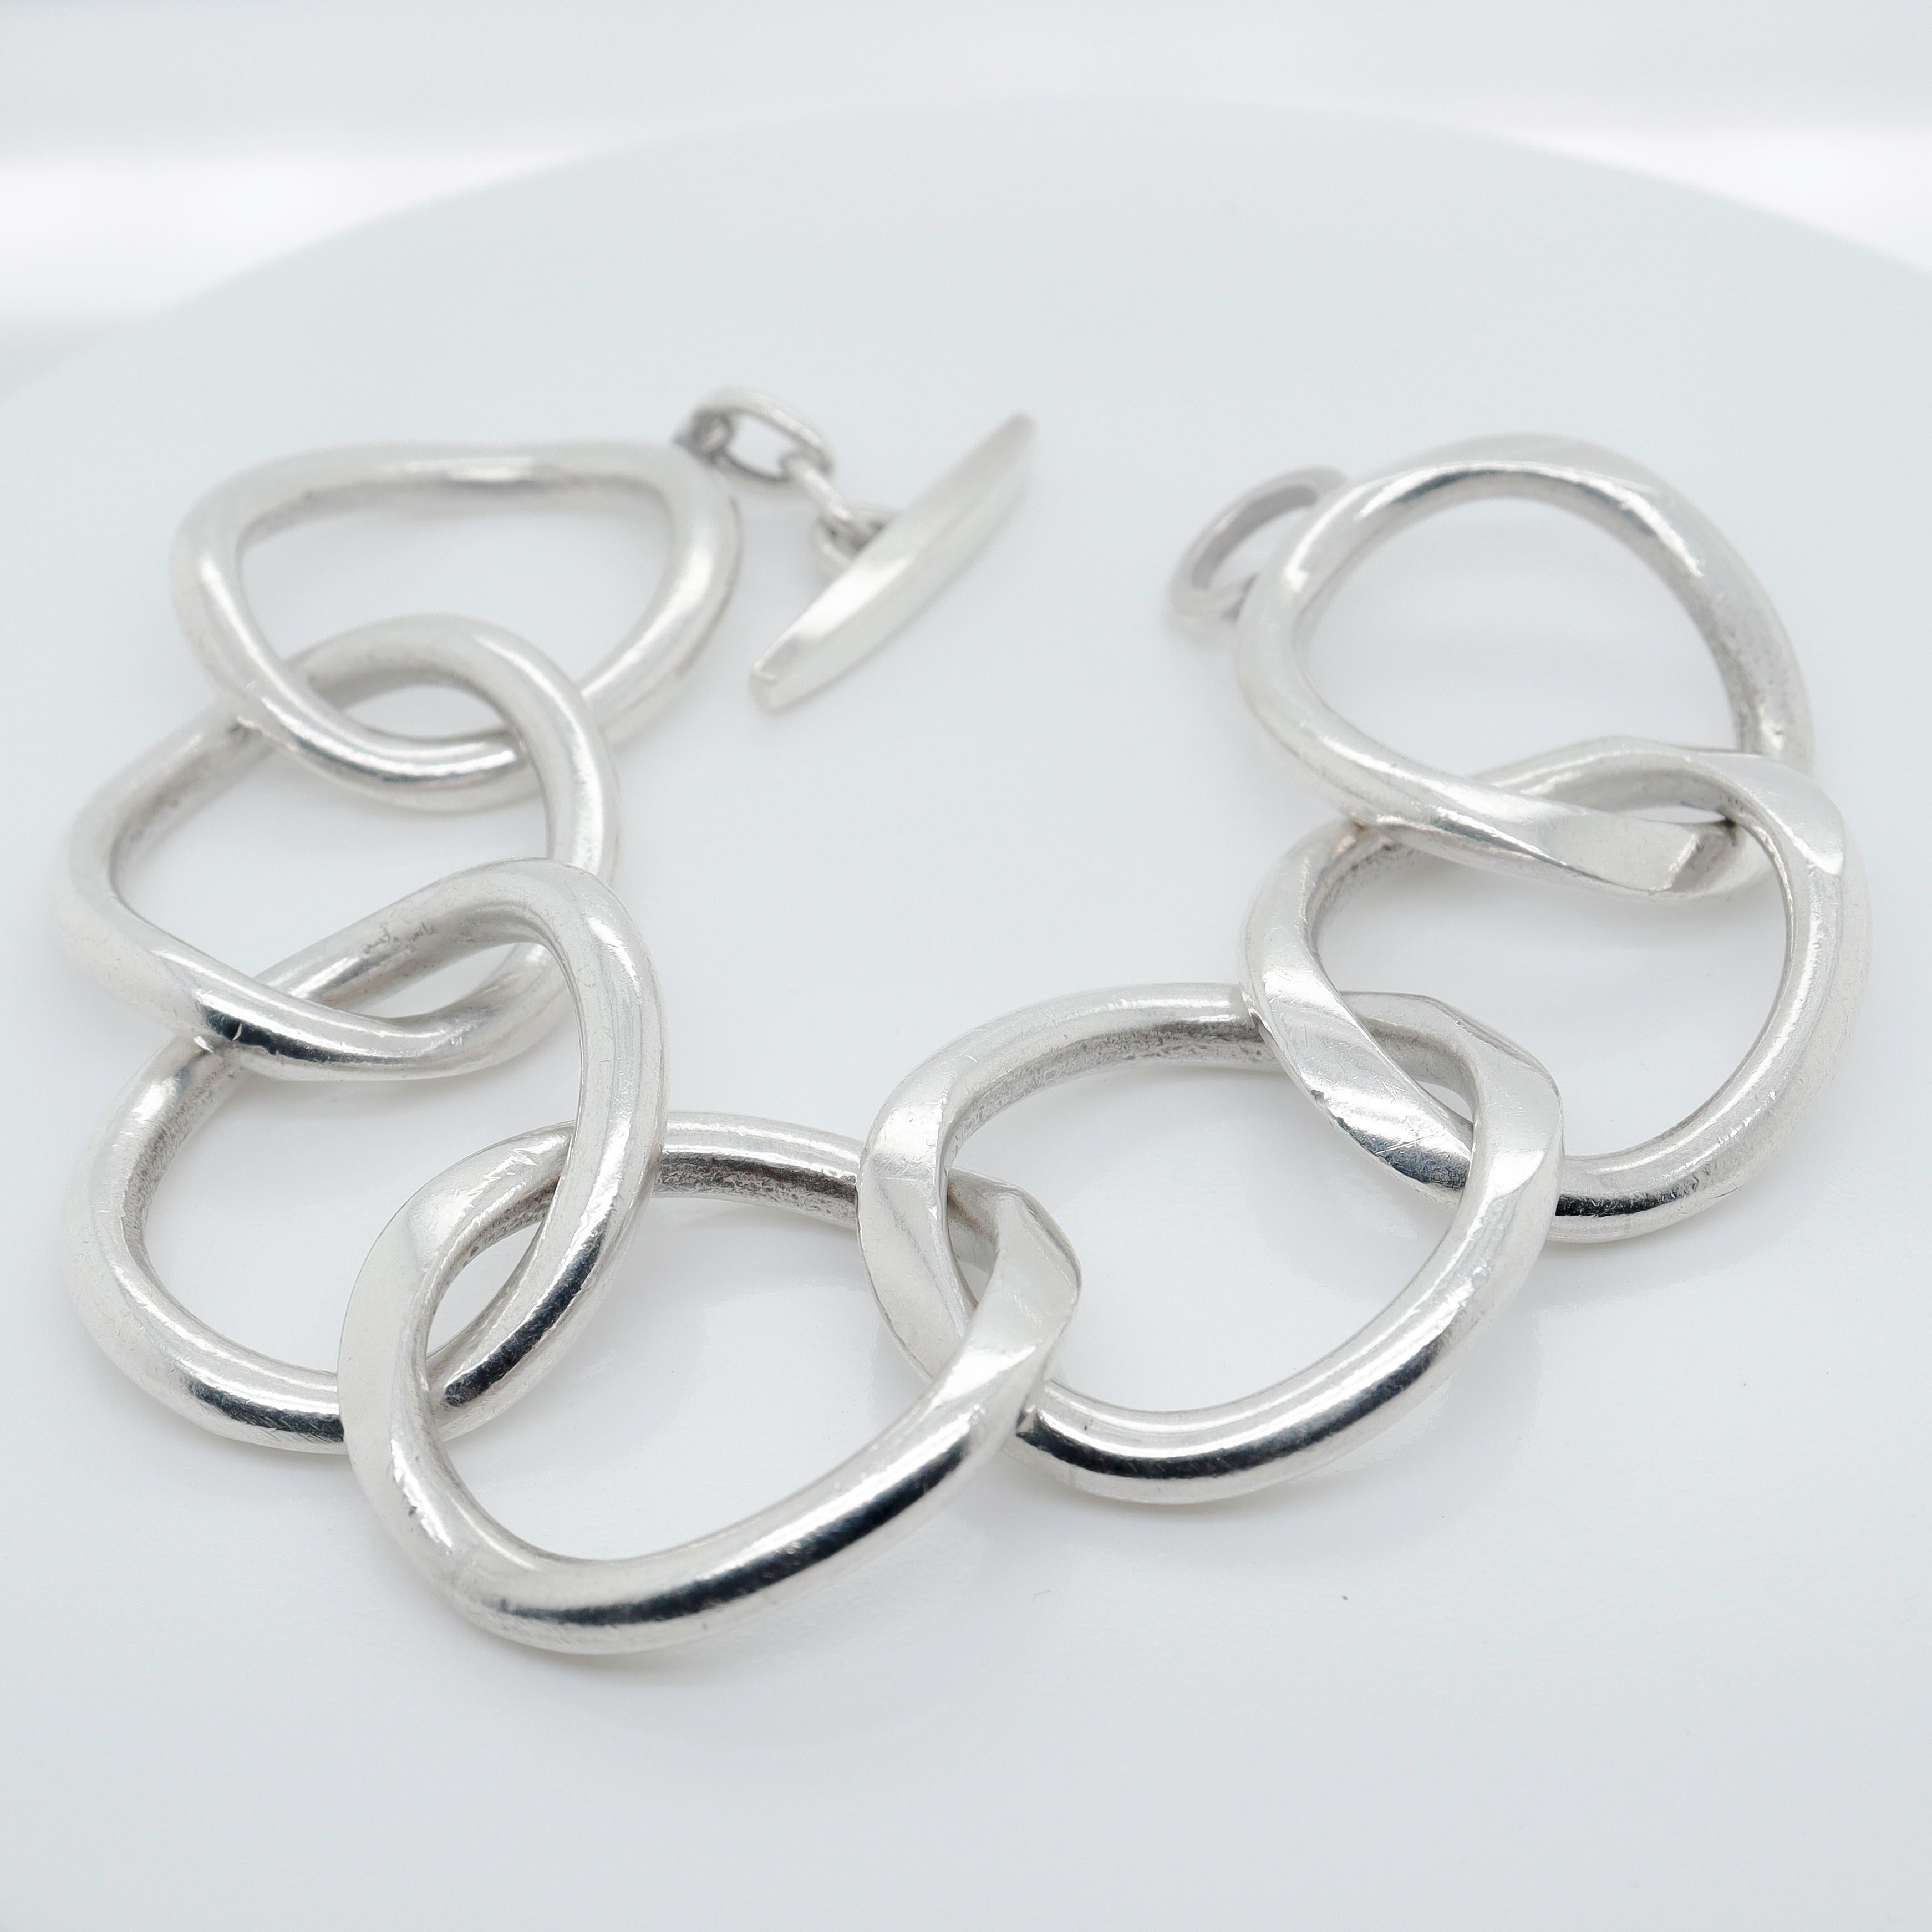 Signed Handmade Danish Modern Sterling Silver Large Link Bracelet by Randers For Sale 6